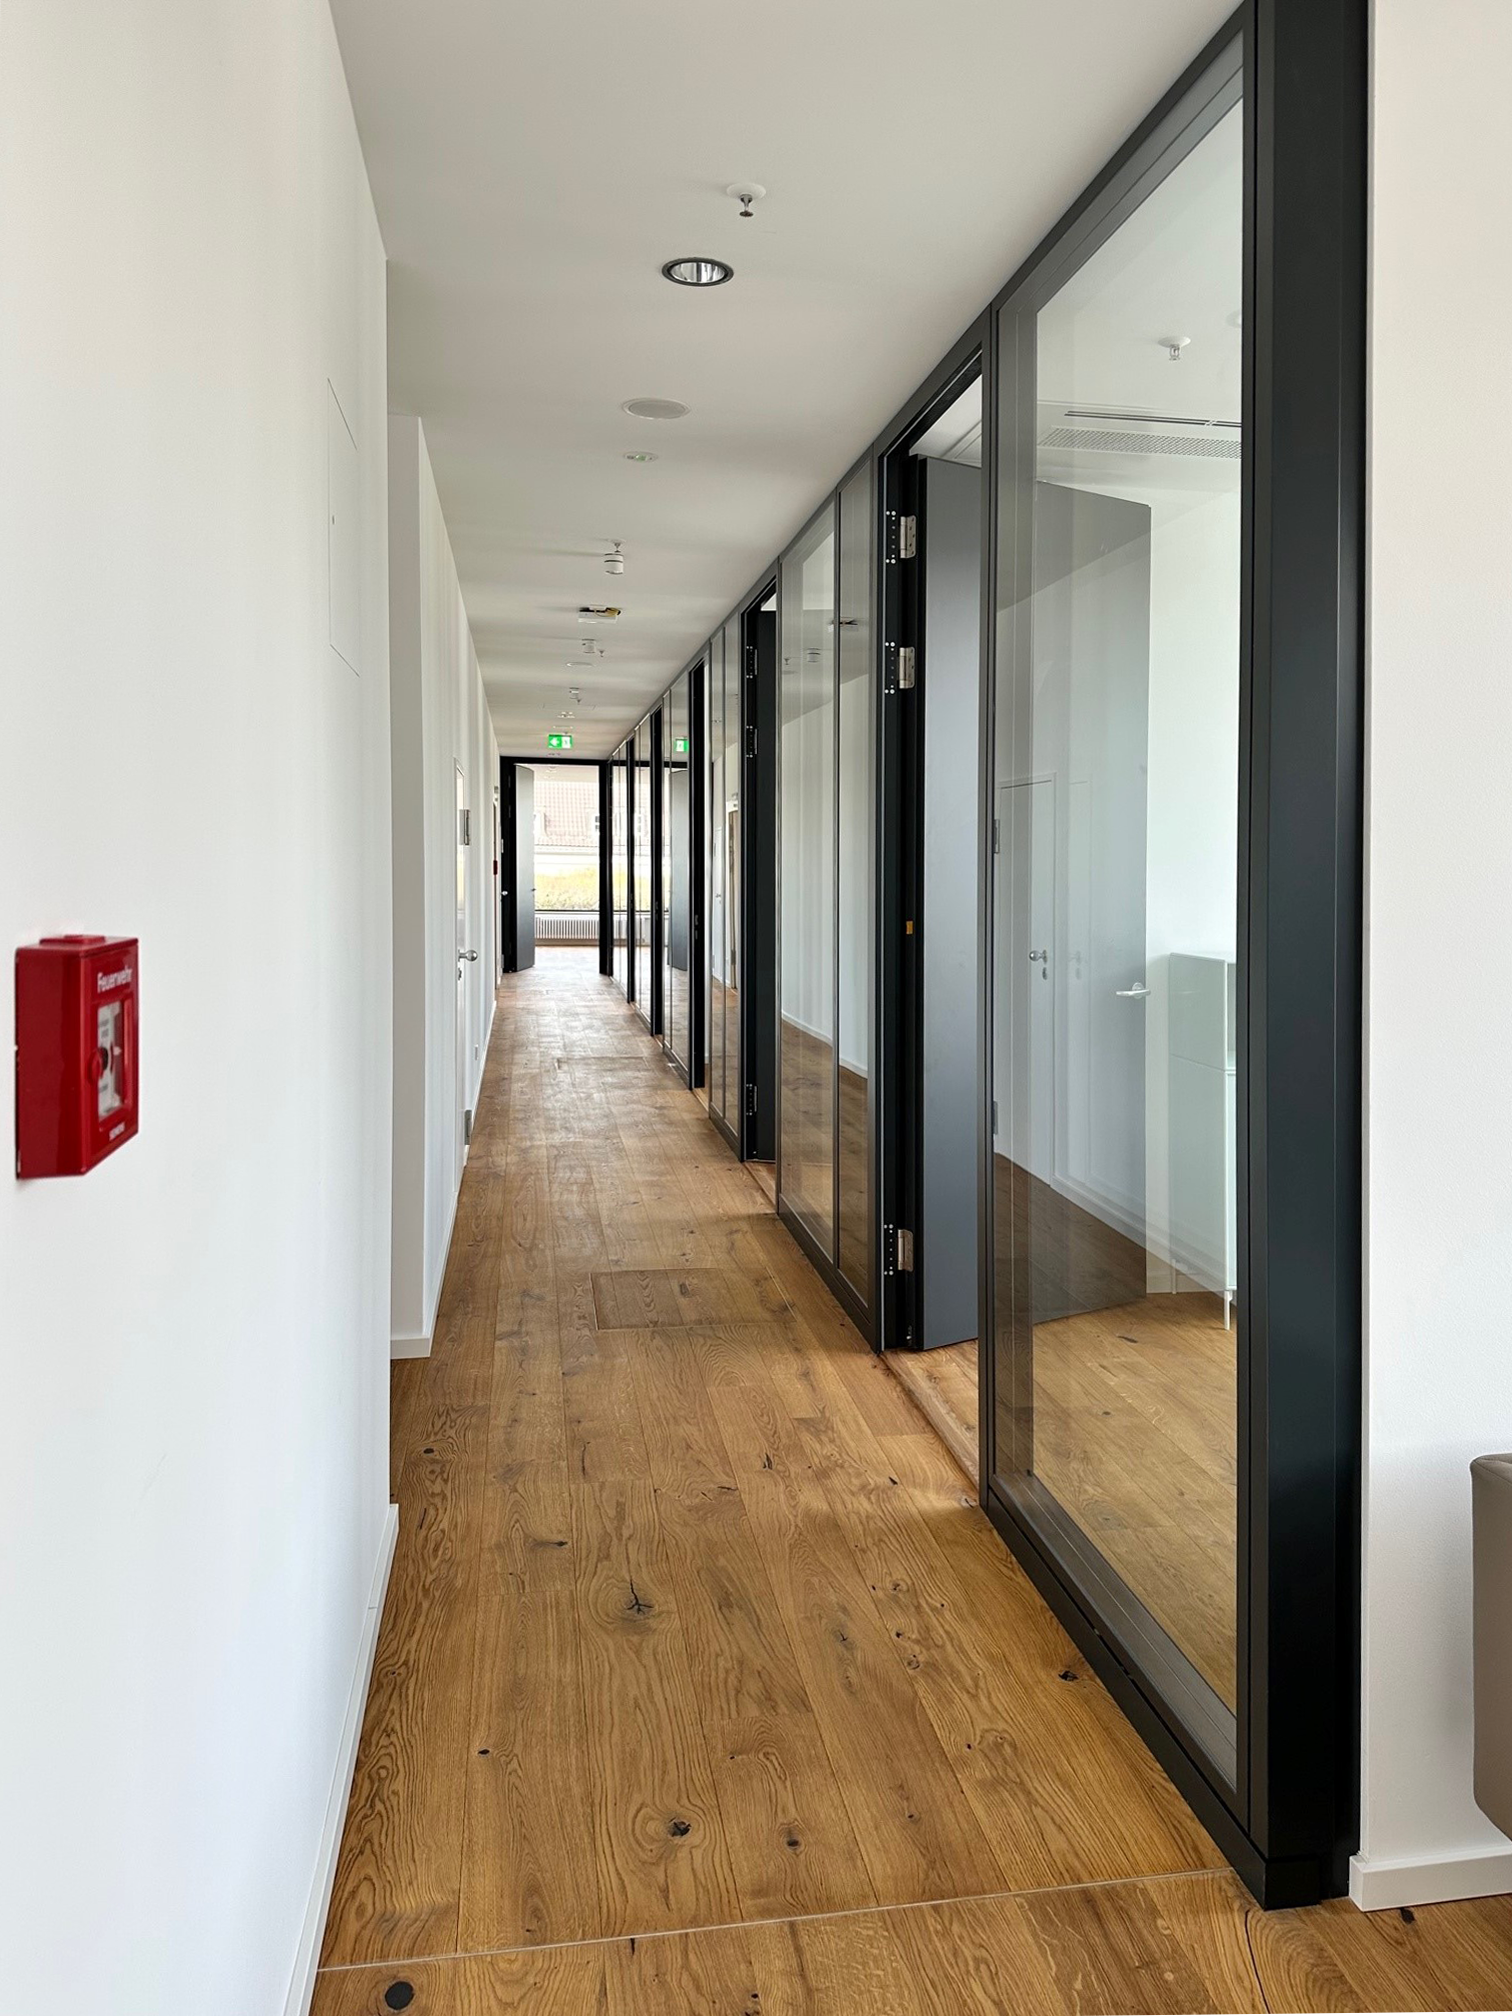 hallway, wooden floor, window, office